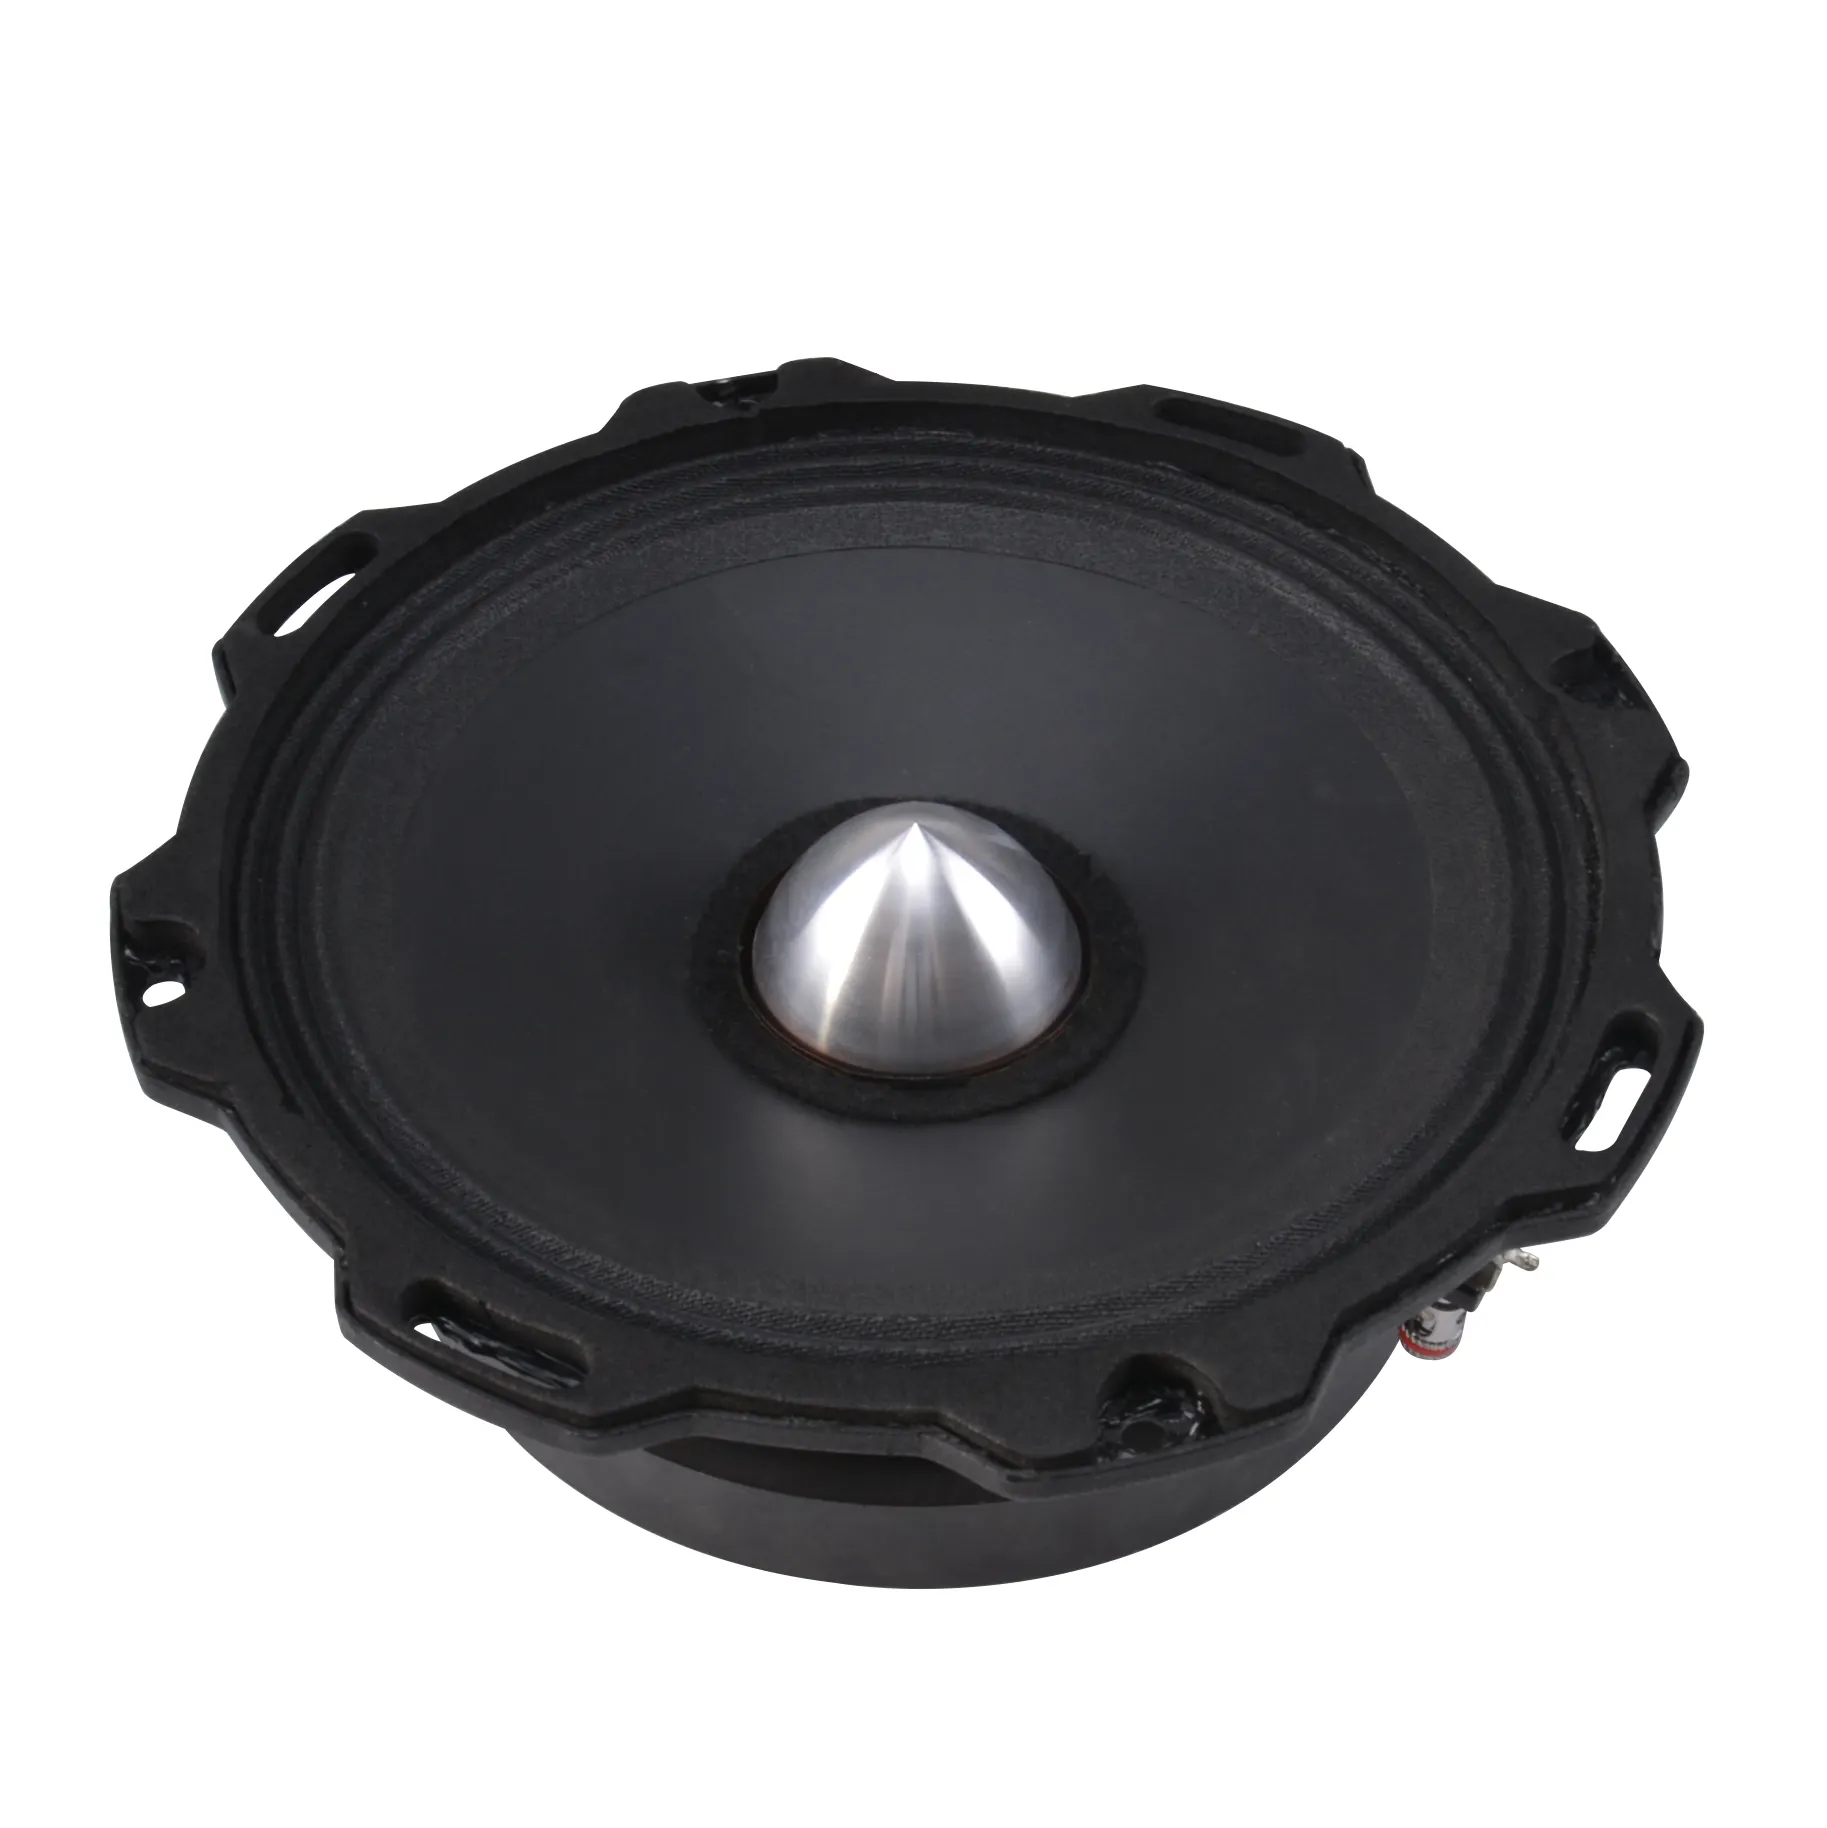 Soway SM-630 klakson mobil profesional 6.5 inci speaker jarak menengah 4 ohm speaker audio mobil kualitas tinggi produk baru